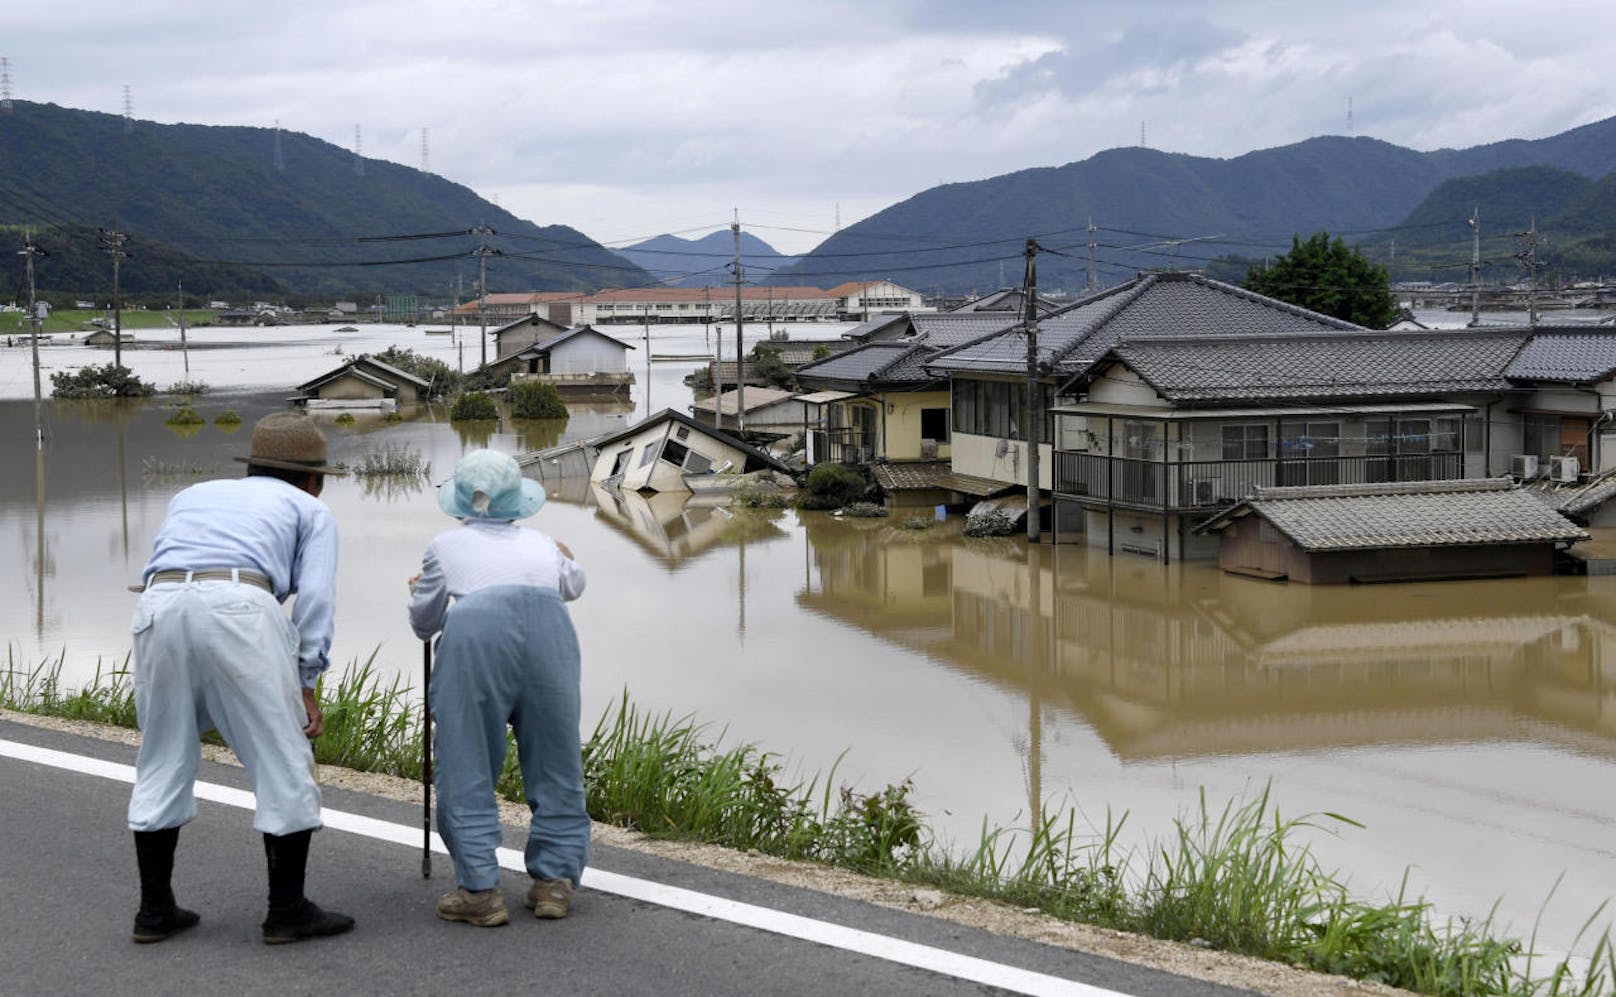 Allein dort wurden 37 Tote und 40 Vermisste gemeldet. Auf der südwestlichen Hauptinsel Shikoku starben 22 Menschen. Die Zahl der Opfer könnte noch weiter steigen.